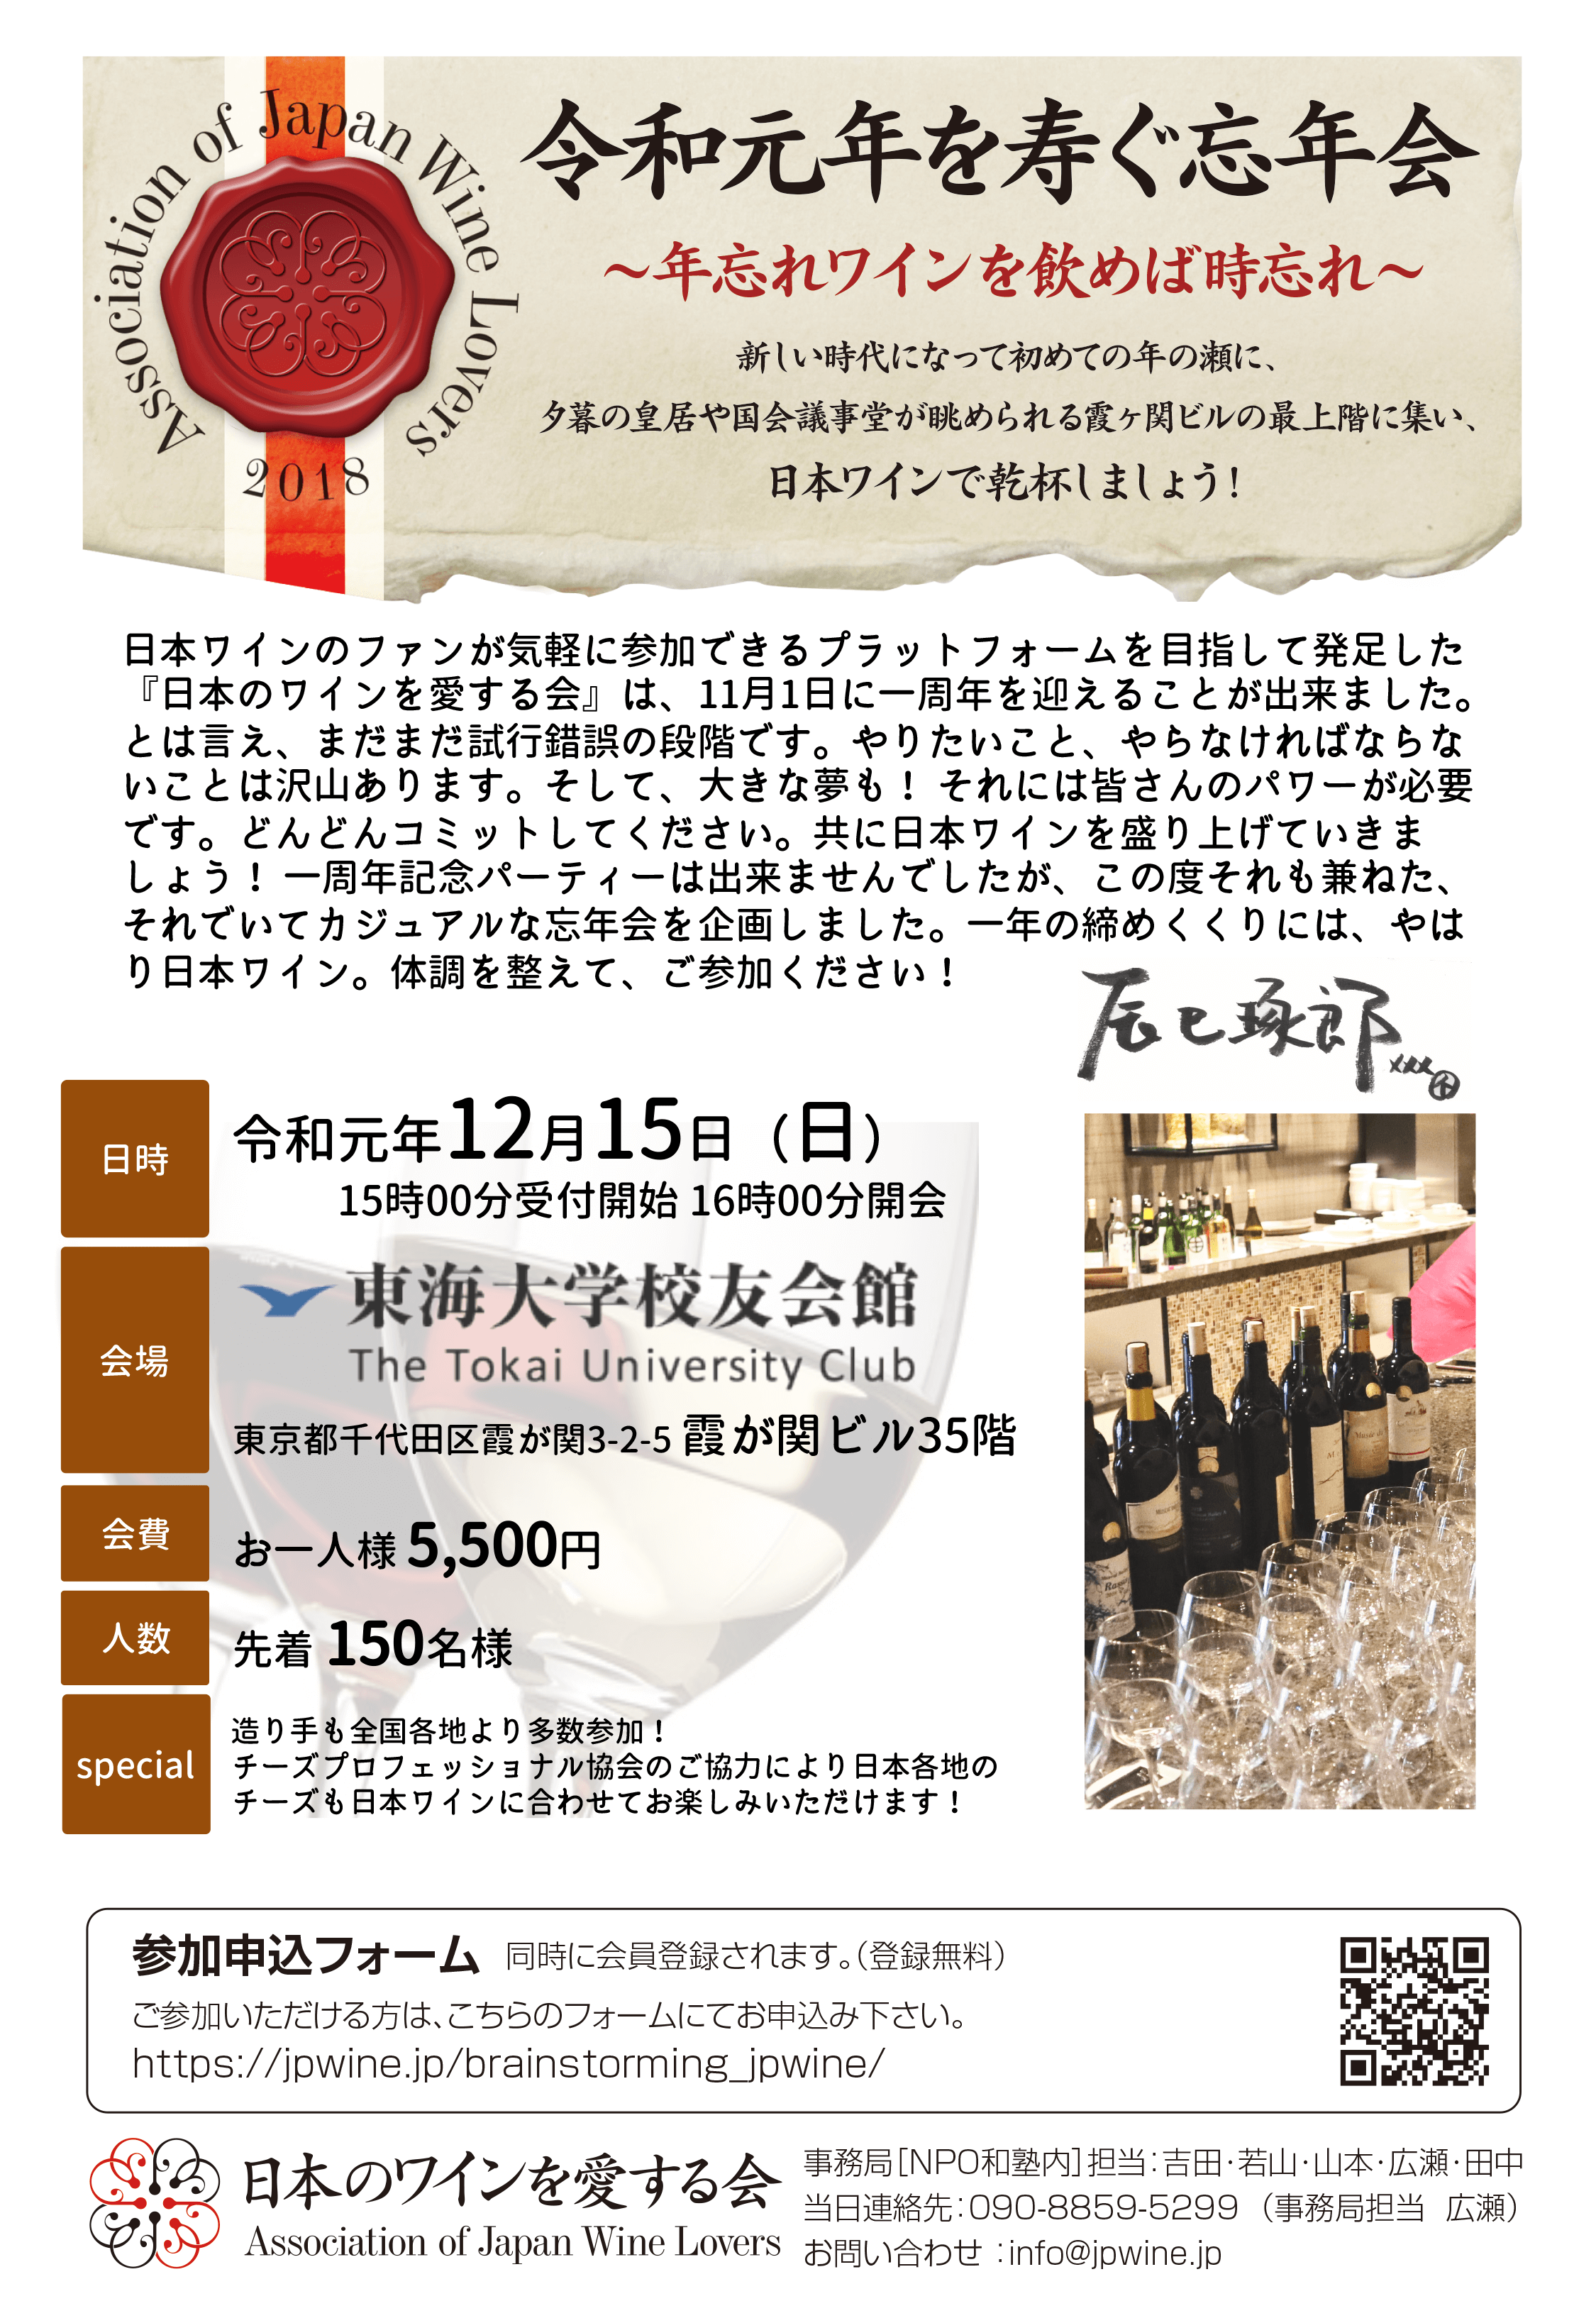 日本のワインを愛する会